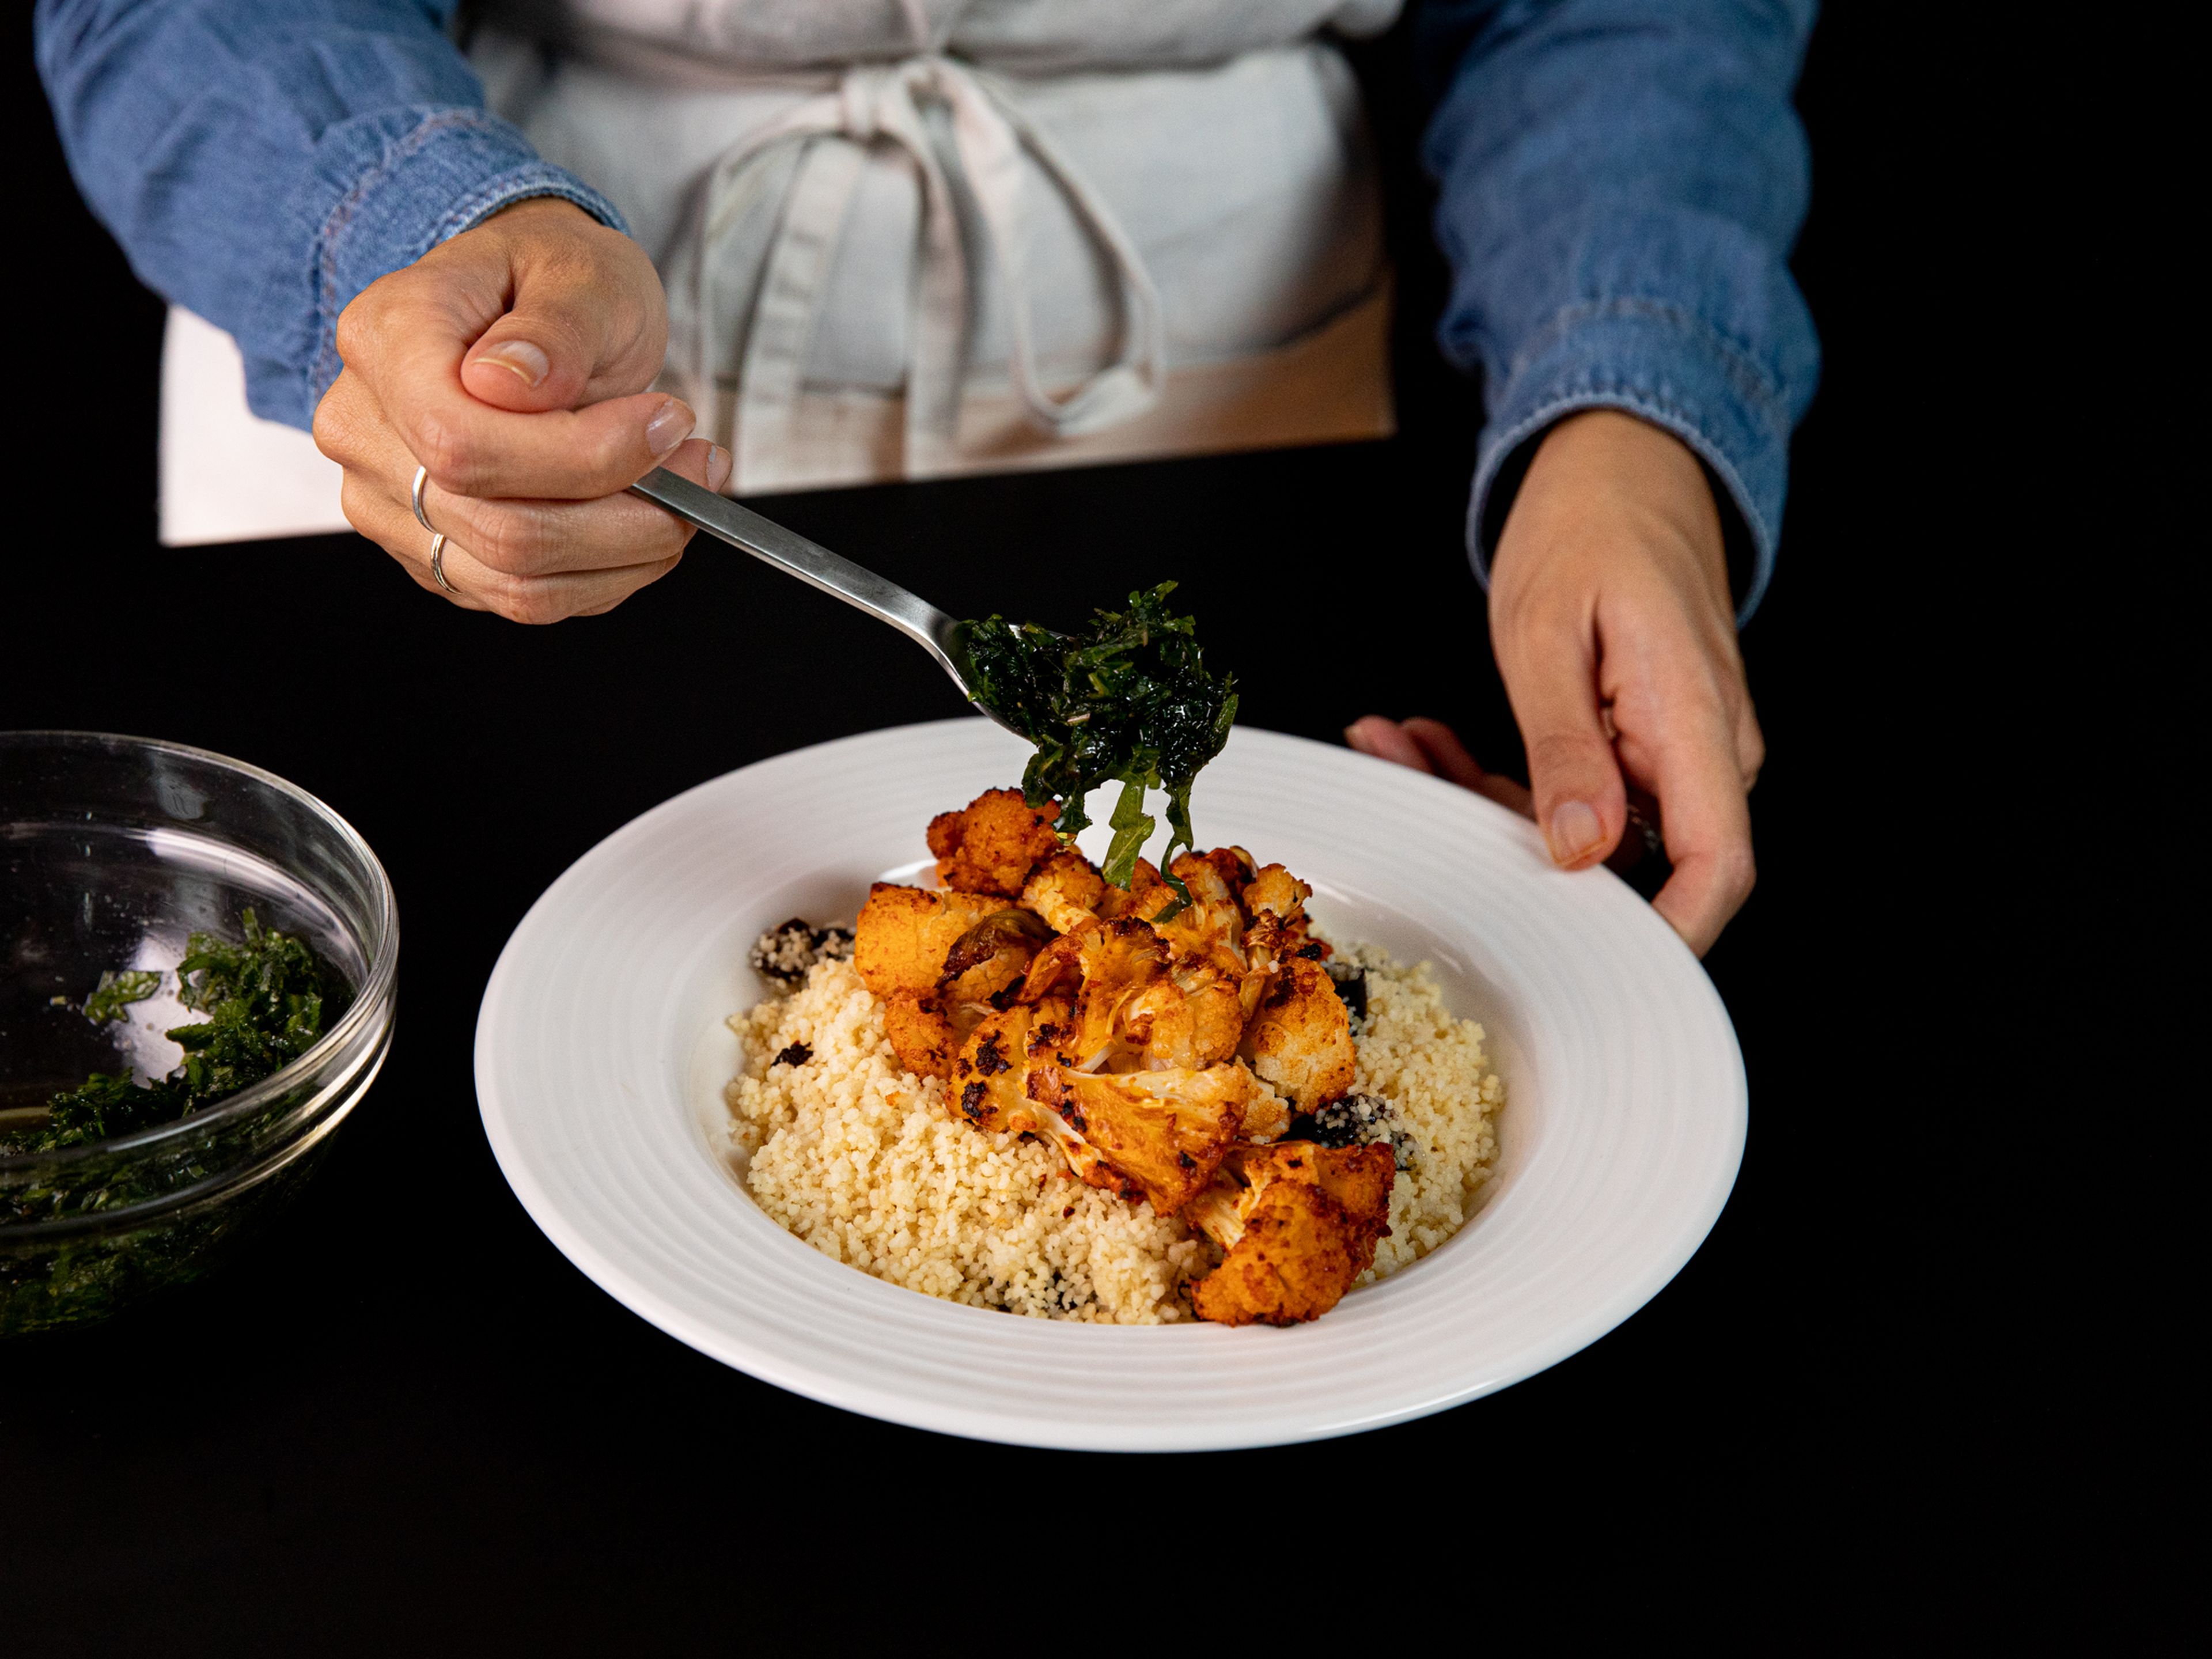 Richte den Couscous gleichmäßig auf Tellern an, streue den Blumenkohl darüber und beträufle alles mit der Minzsauce. Wenn gewünscht mit griechischem Joghurt und einem Spritzer Zitronensaft servieren. Guten Appetit!